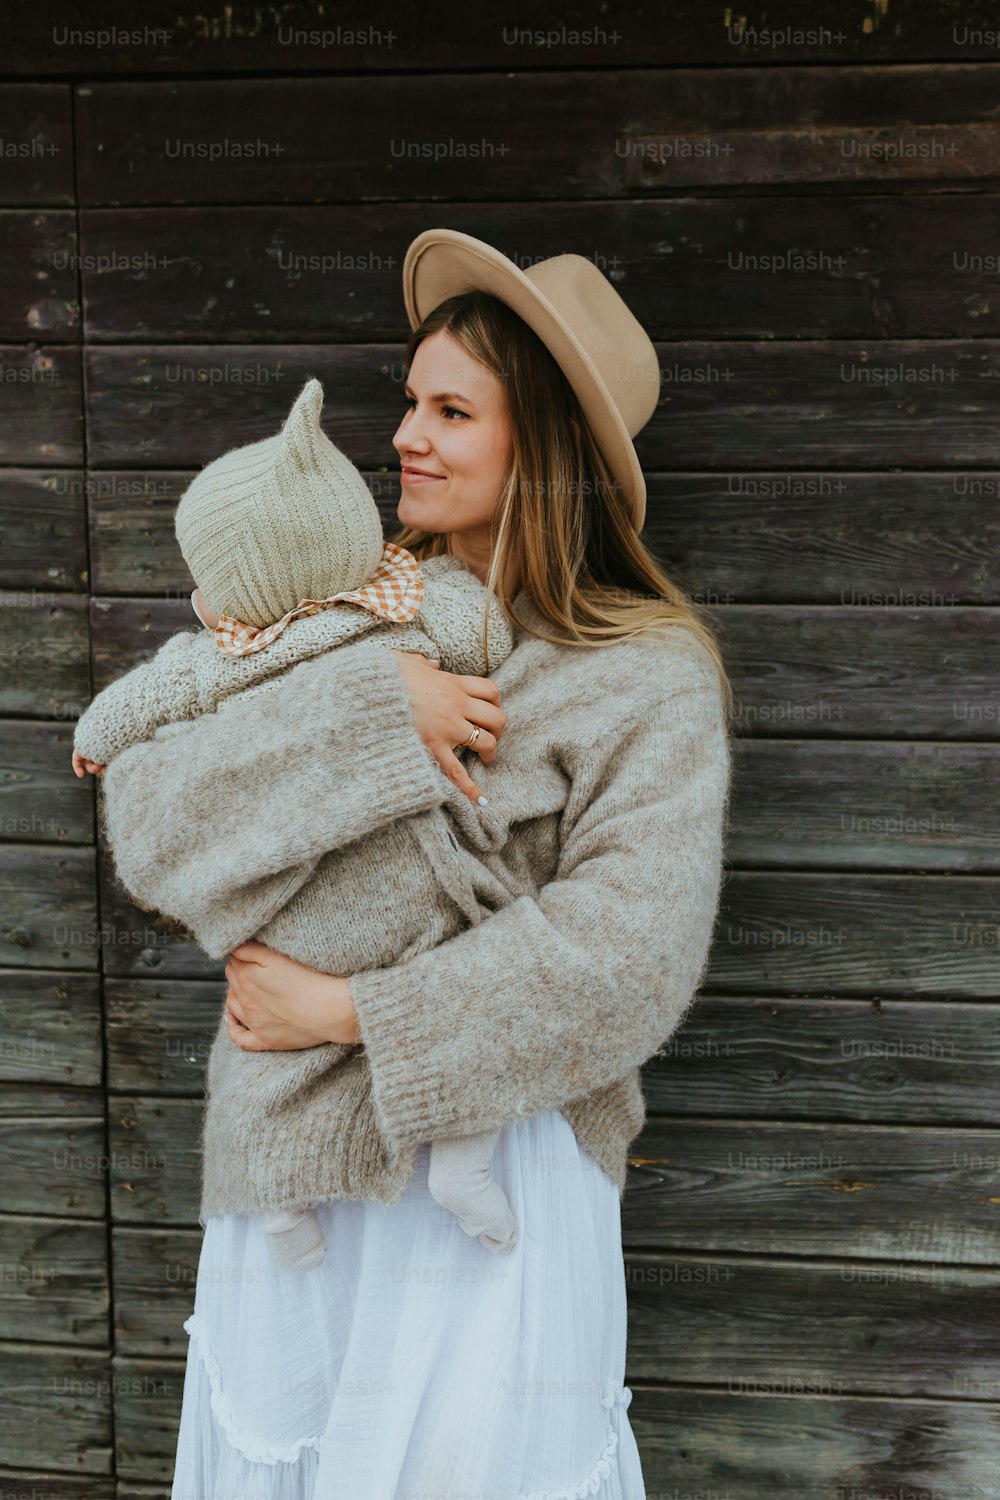 Une femme coiffée d’un chapeau tenant un bébé dans ses bras